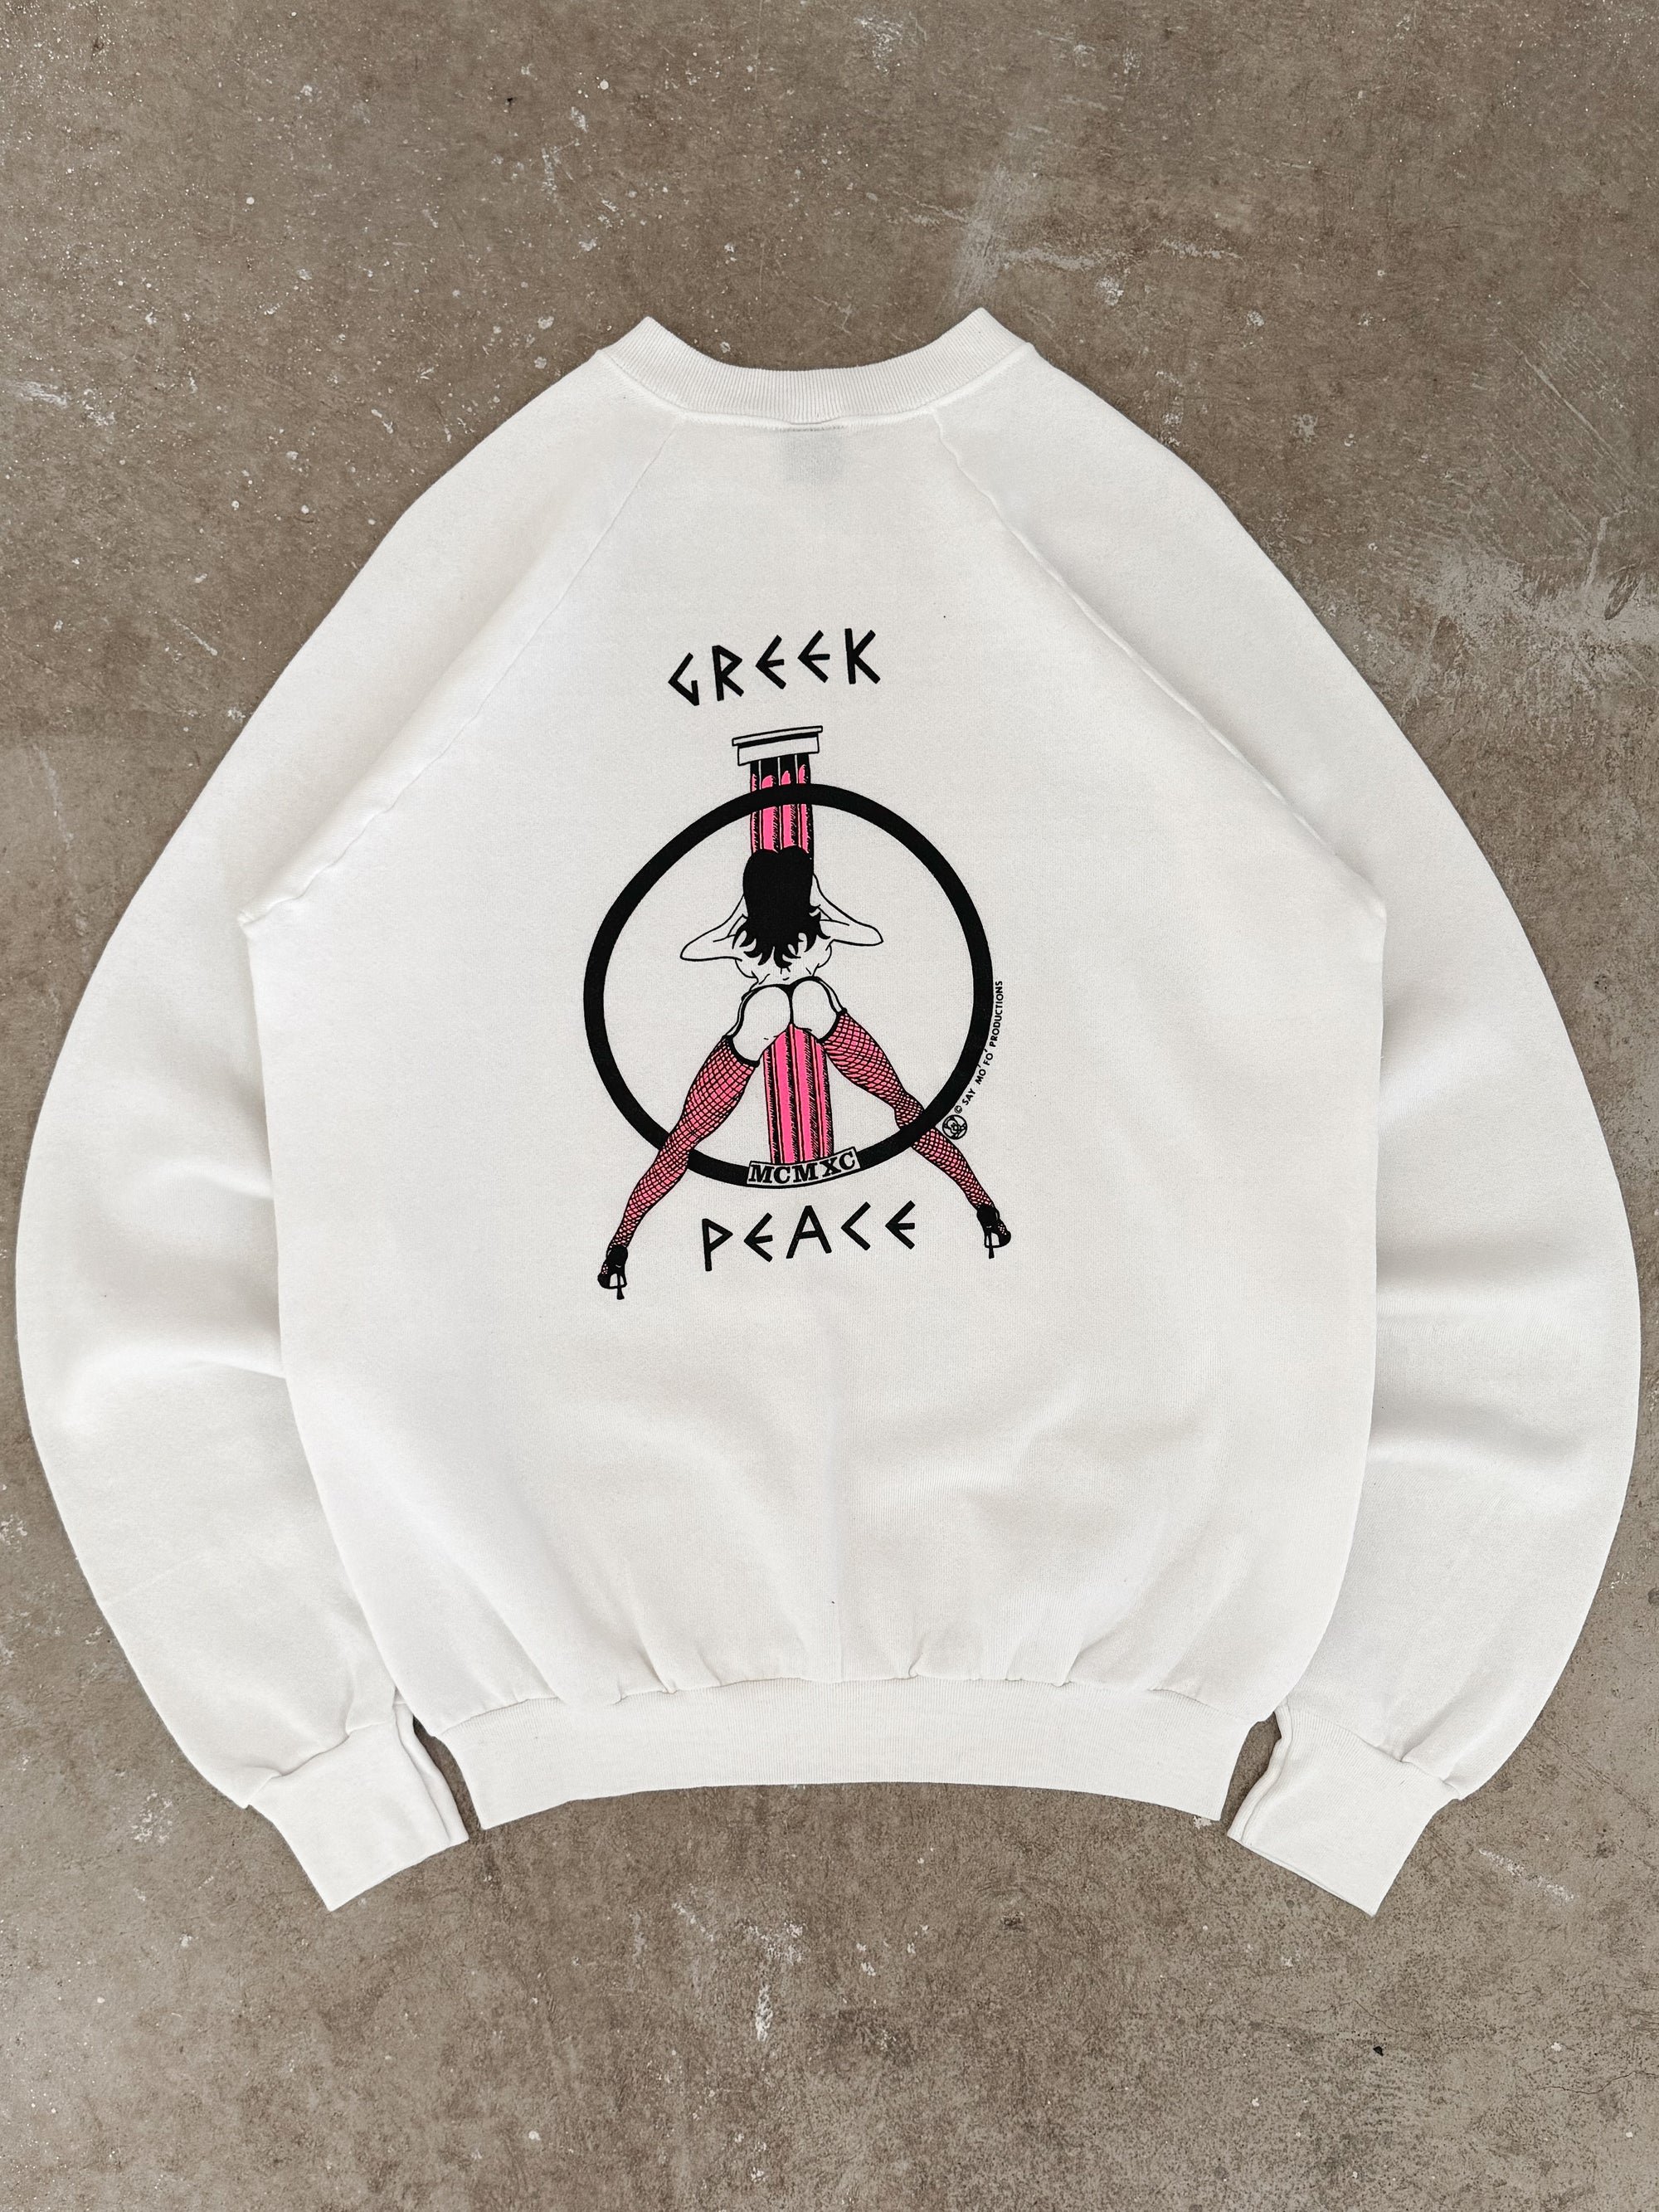 1980s "Greek Peace" Sweatshirt (M)